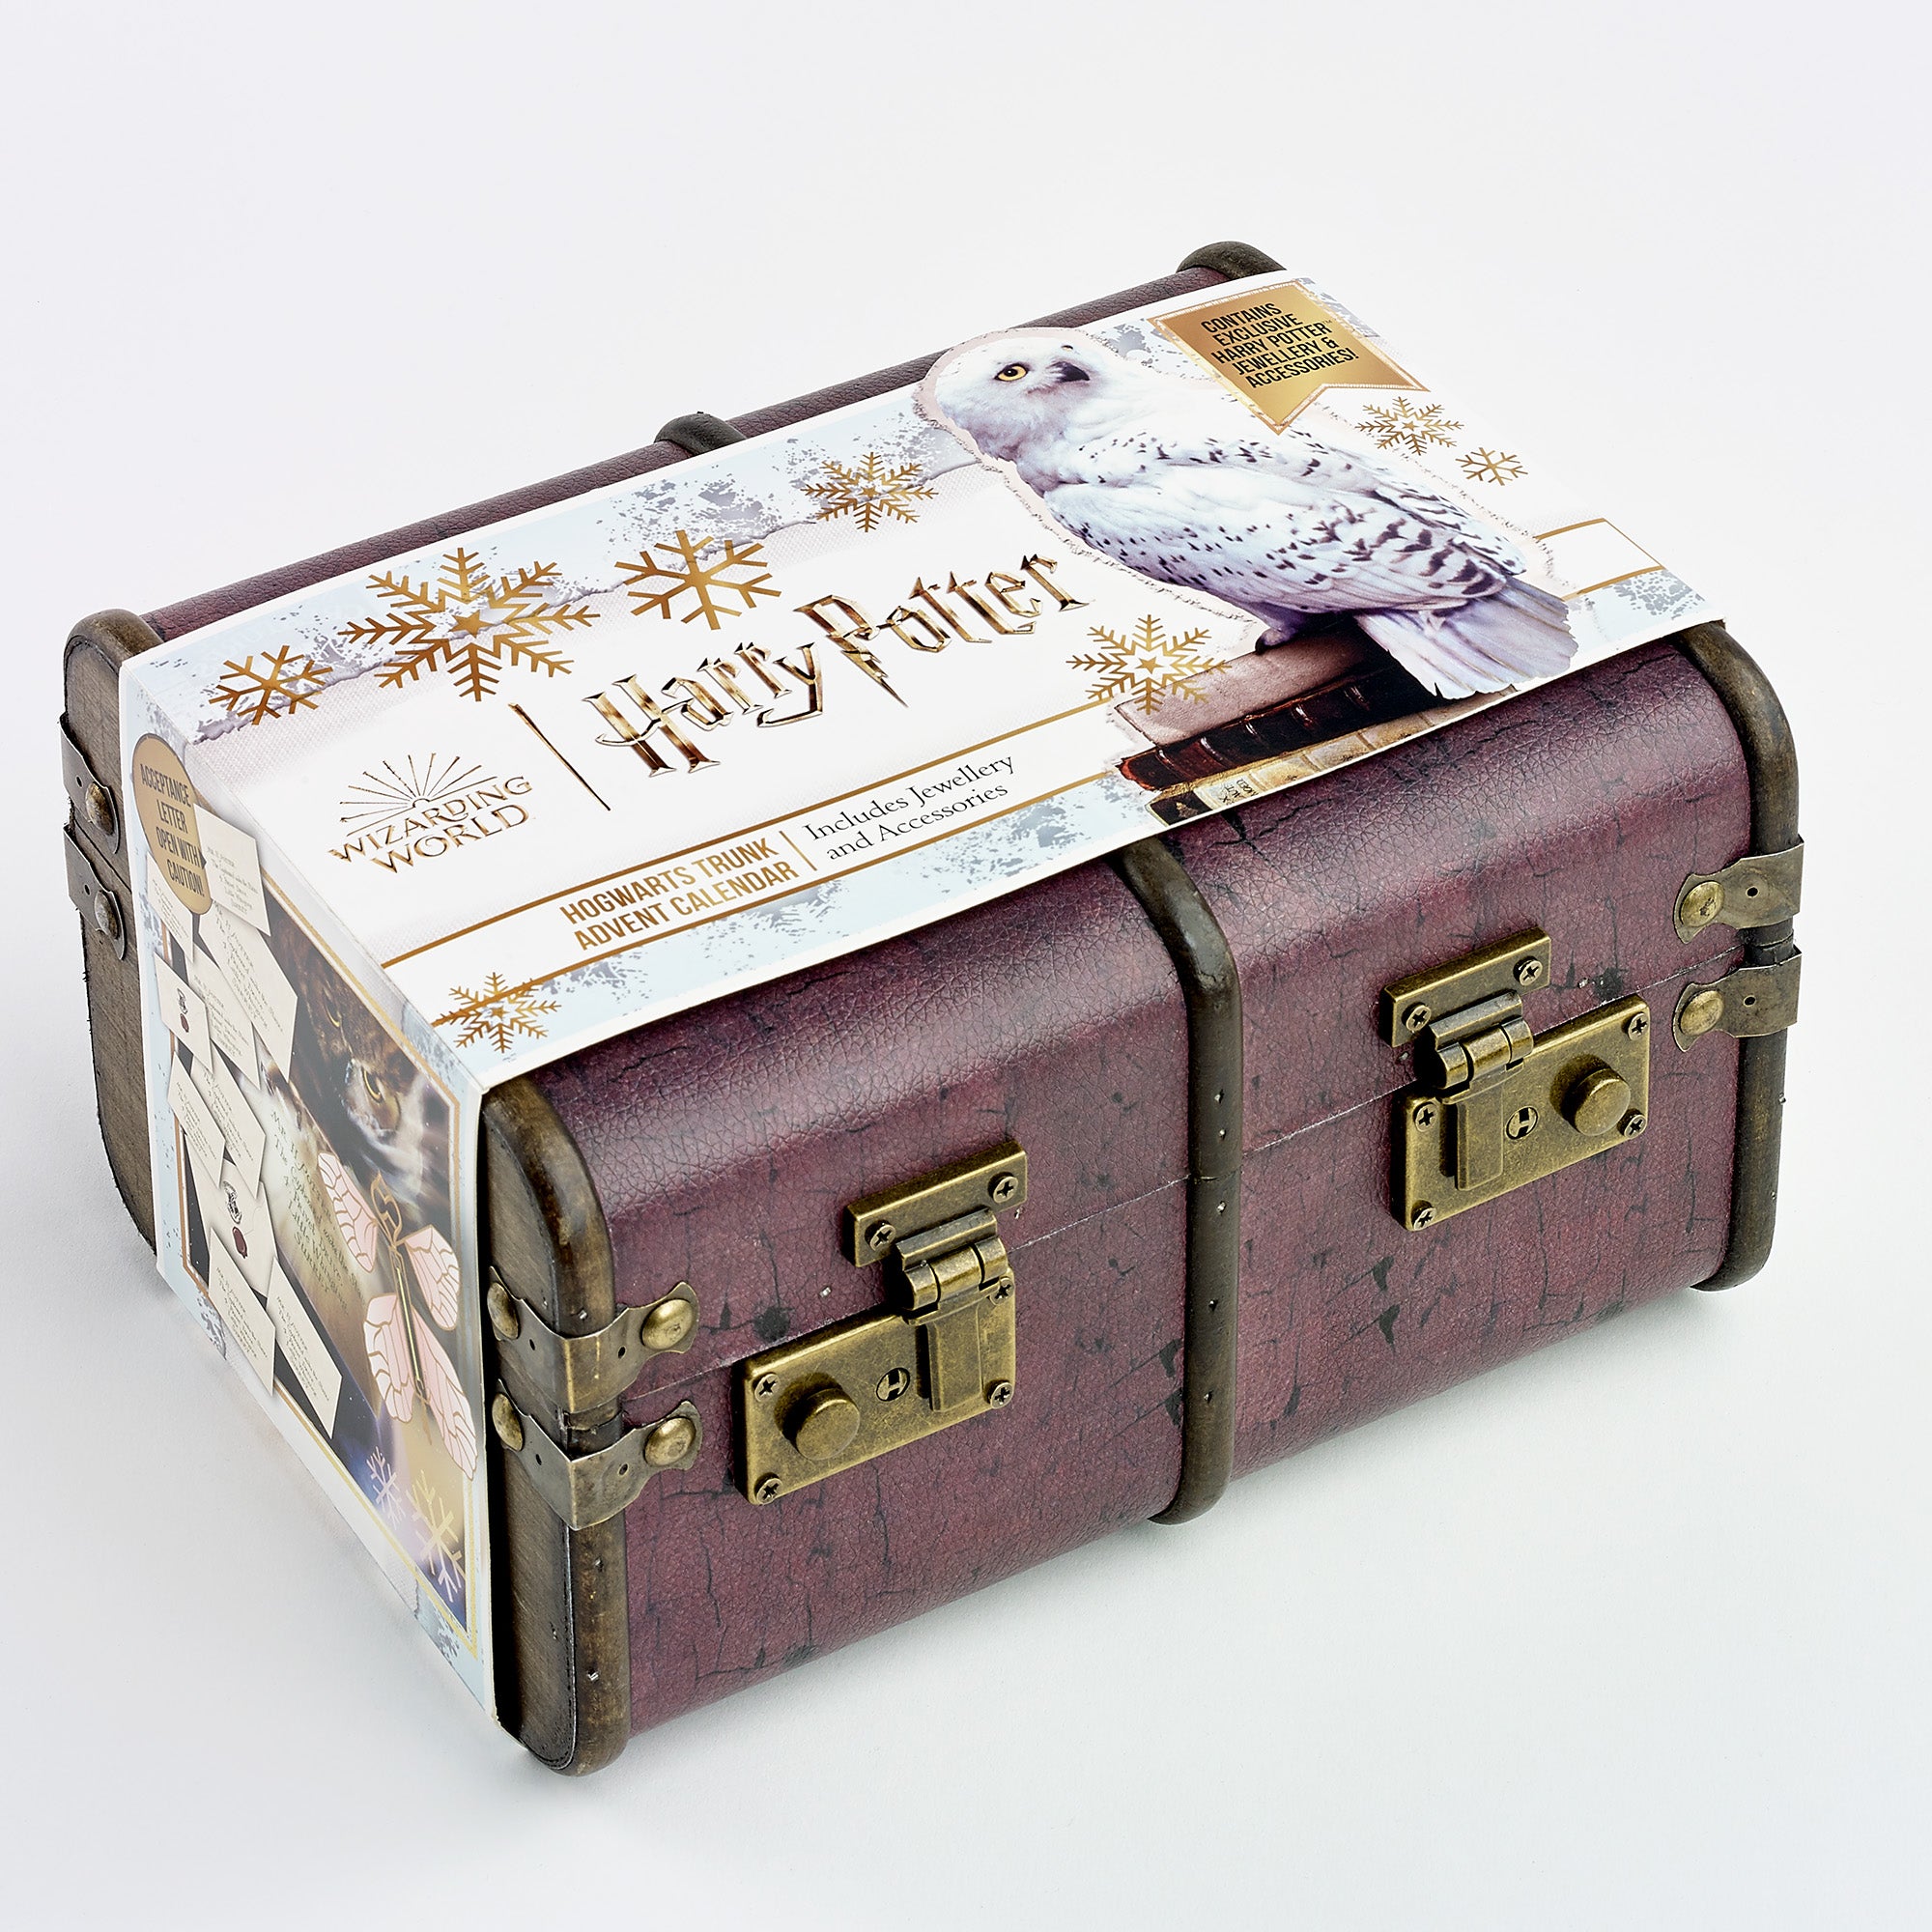 Harry Potter Zaubertränke-Adventskalender – offizielles Lizenzprodukt – kostenloser Versand mit Sendungsverfolgung